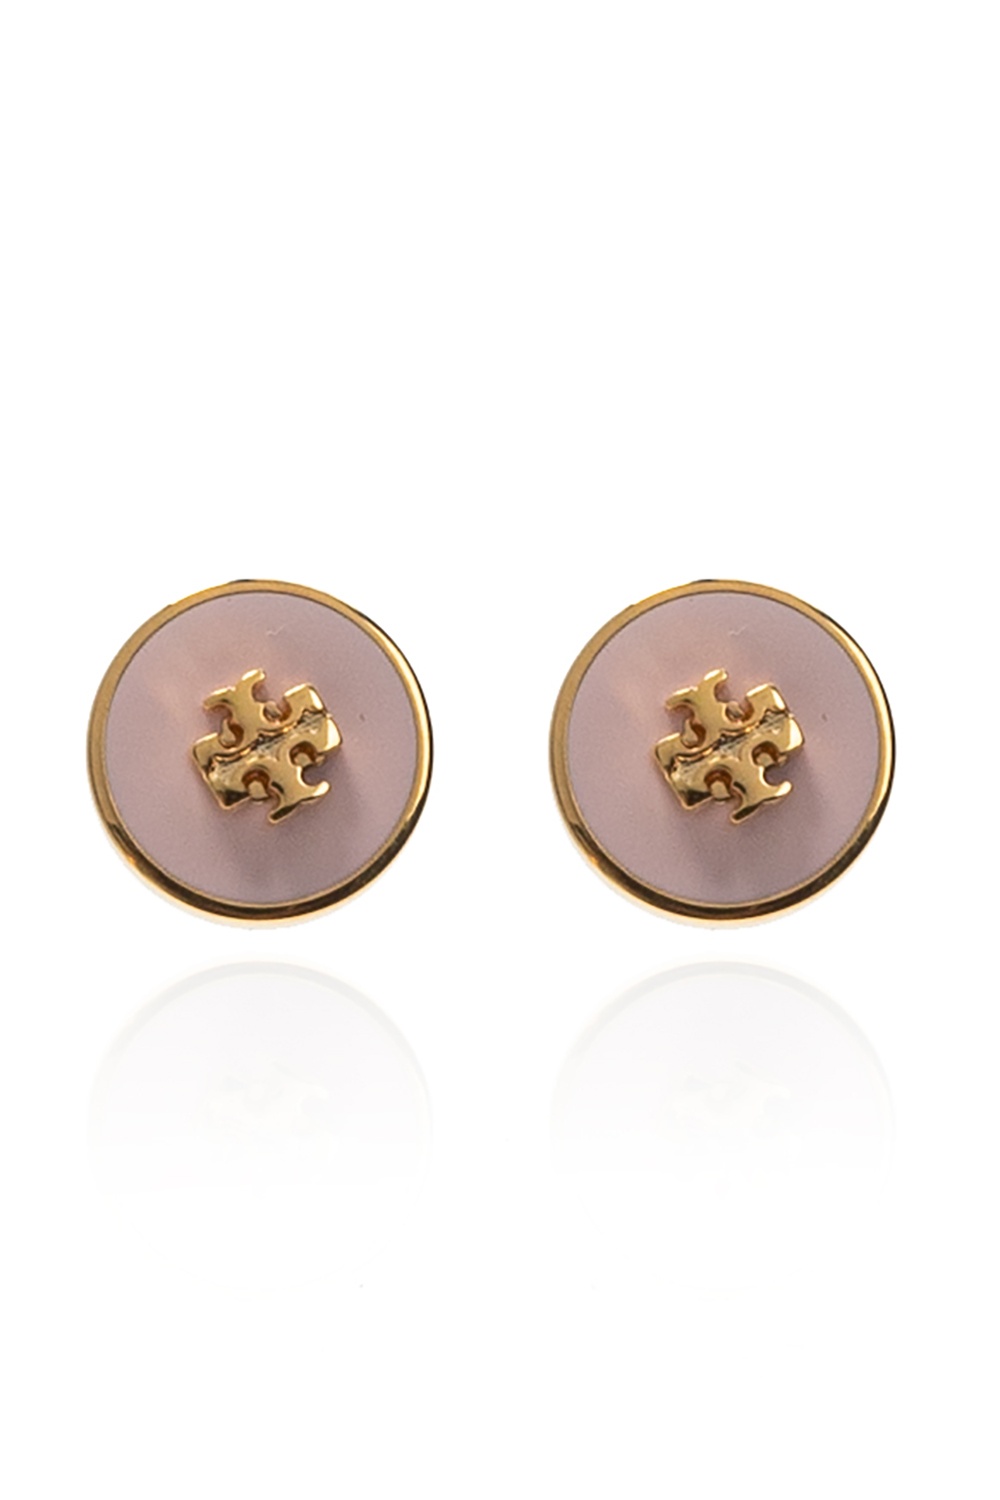 Tory Burch Logo earrings | Women's Jewelery | IetpShops